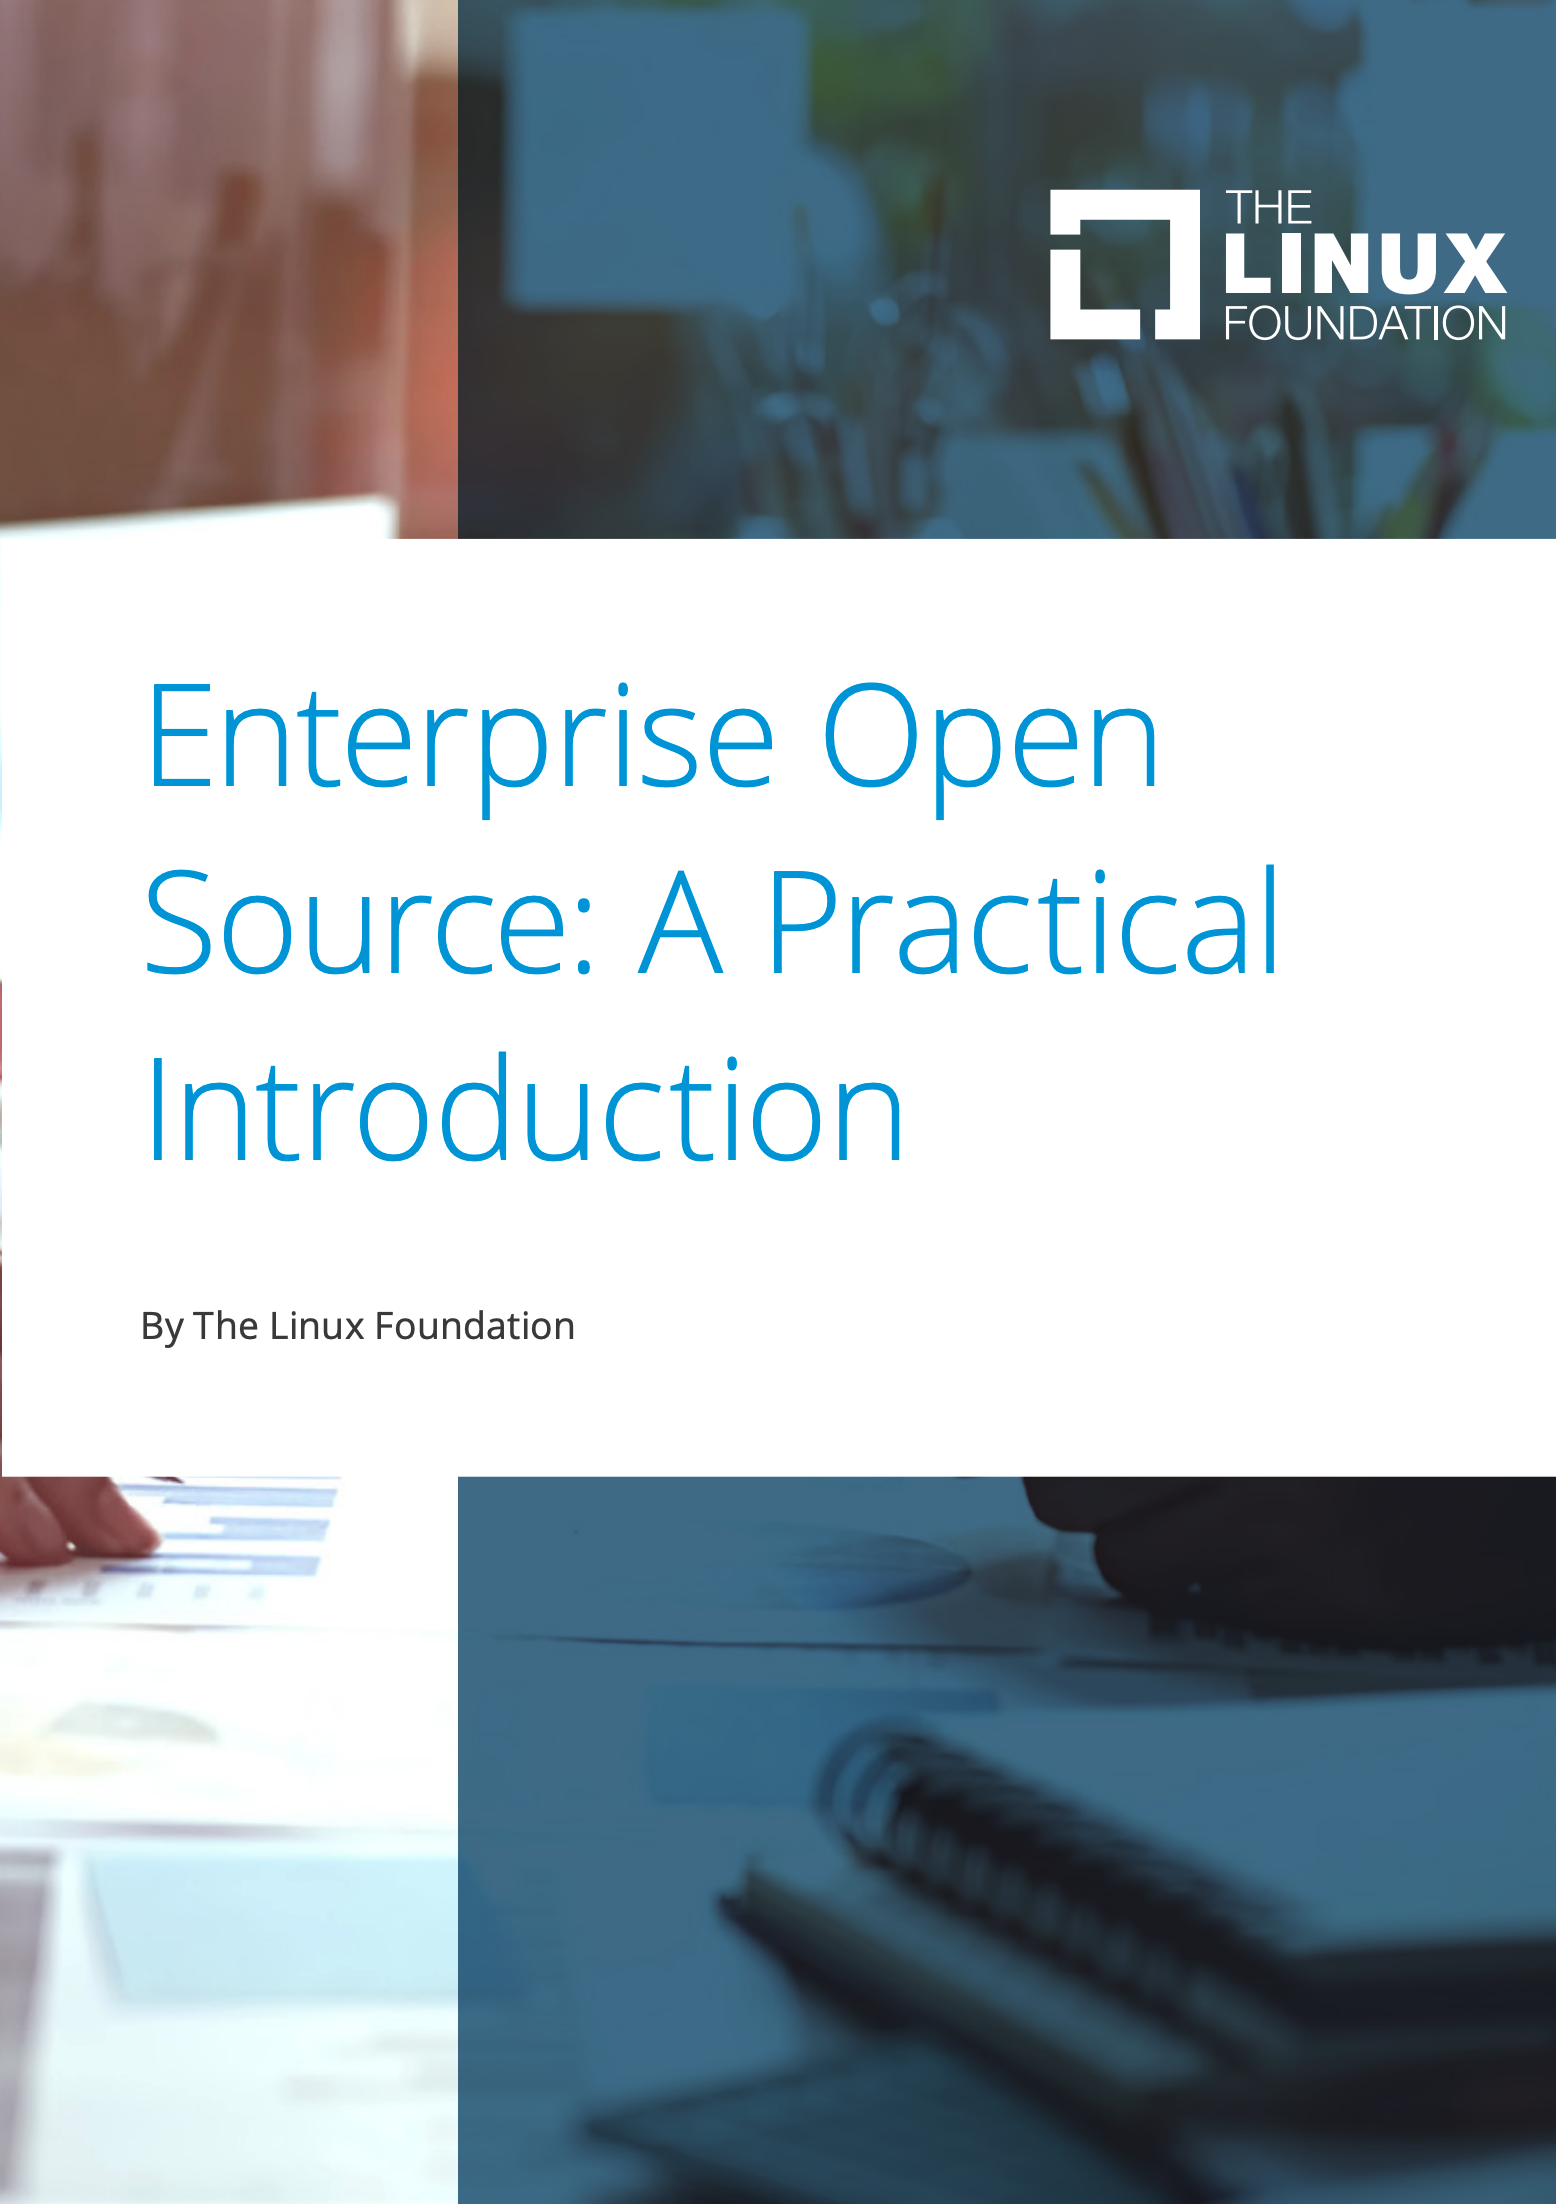 Enterprise Open Source: A Practical Introduction